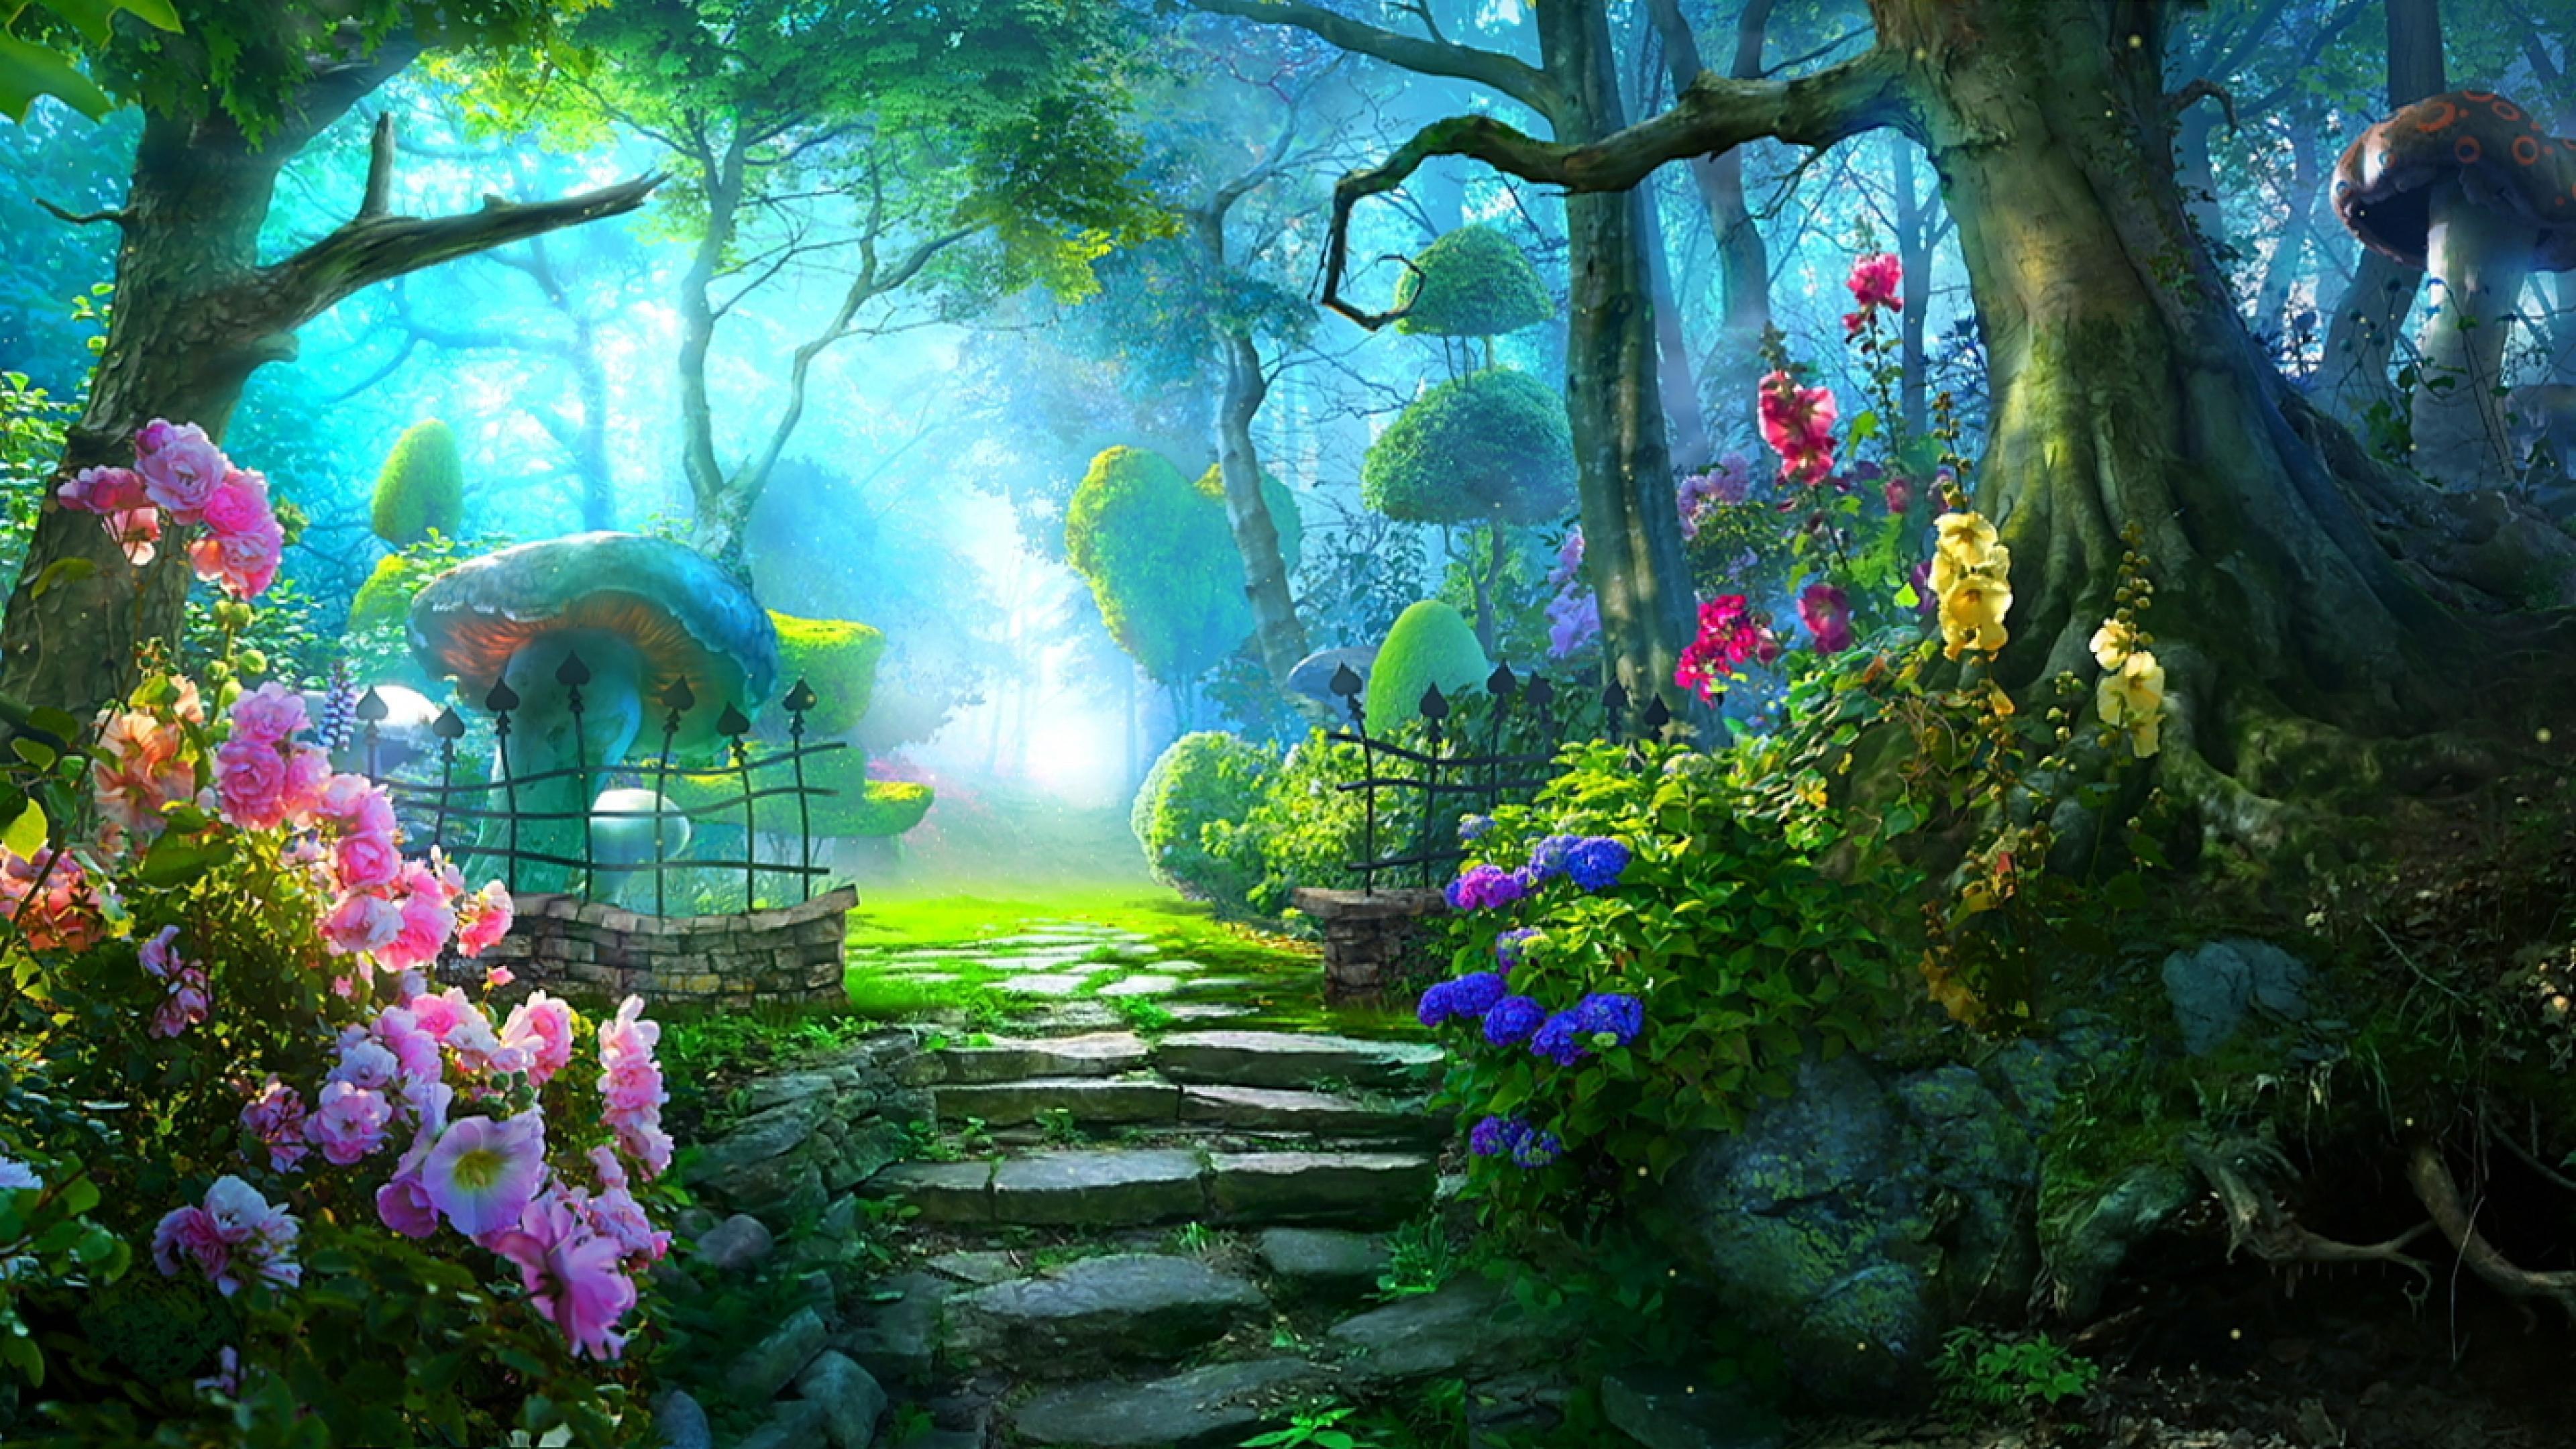 Hình nền 3840x2160 Enchanted Forest cho điện thoại di động - Enchanted Forest